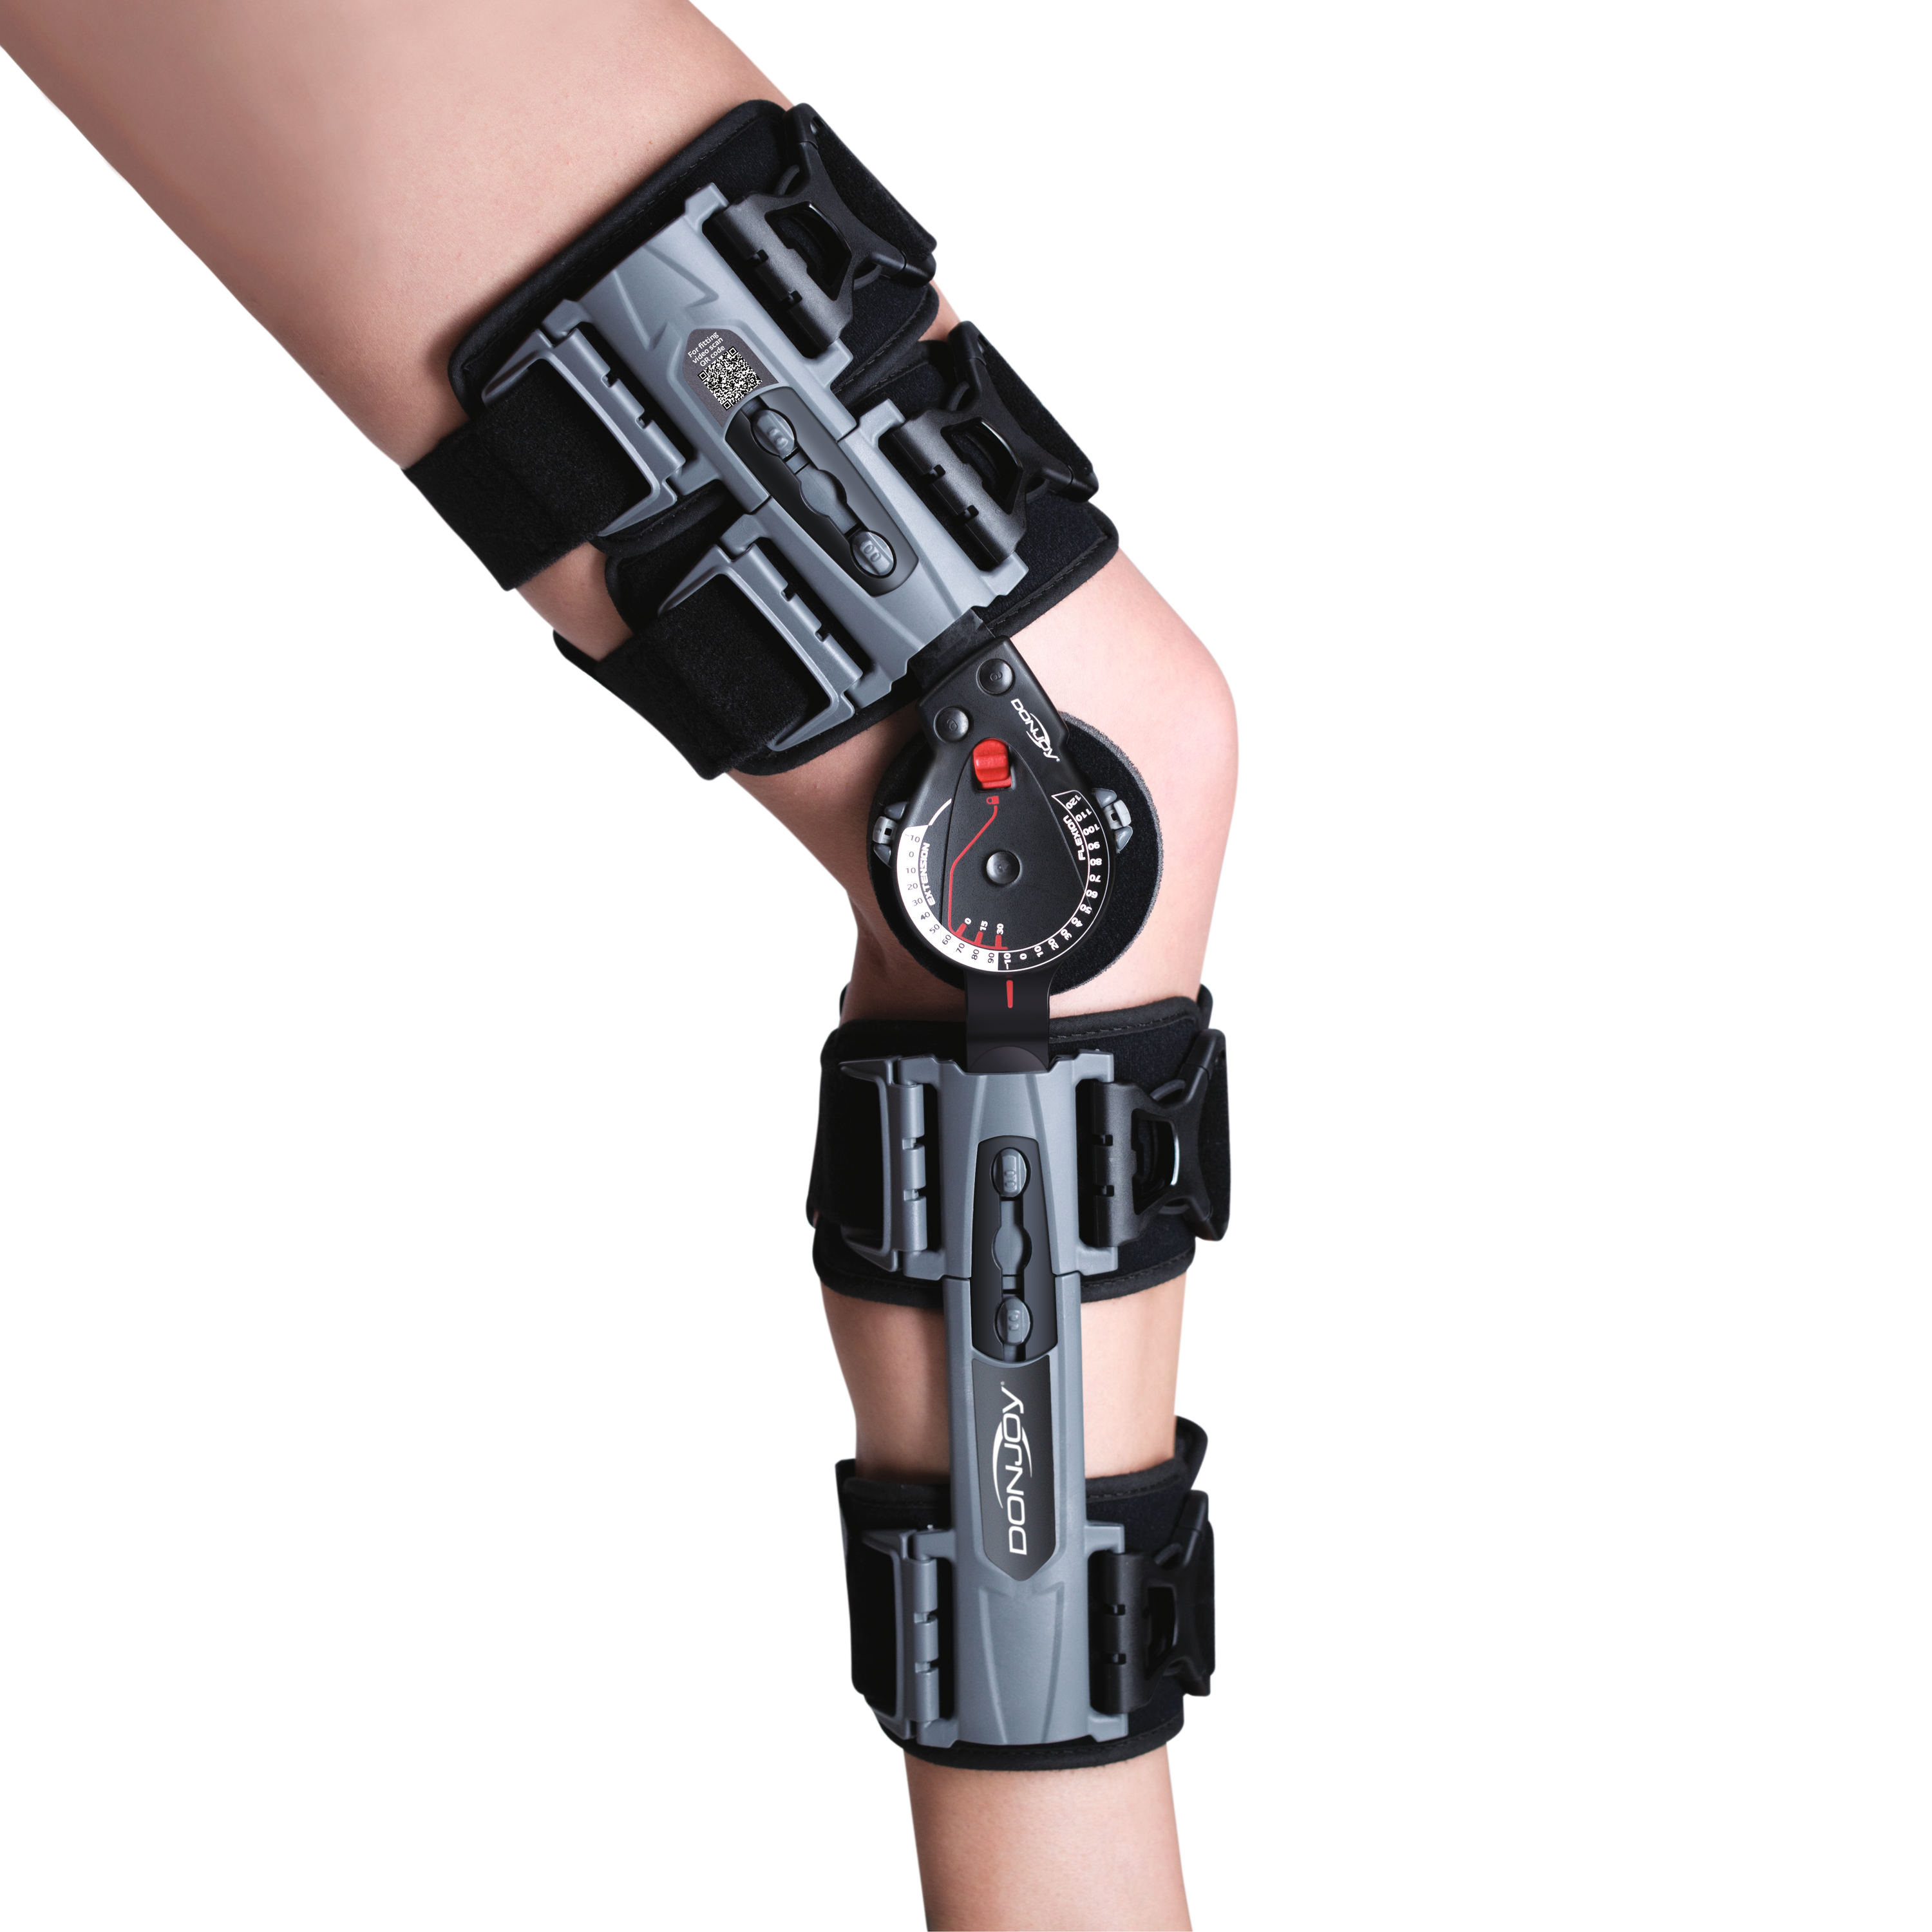 Produktbild DONJOY® X-Act ROM Knee, Knieorthese zur frühfunktionellen Mobilisierung